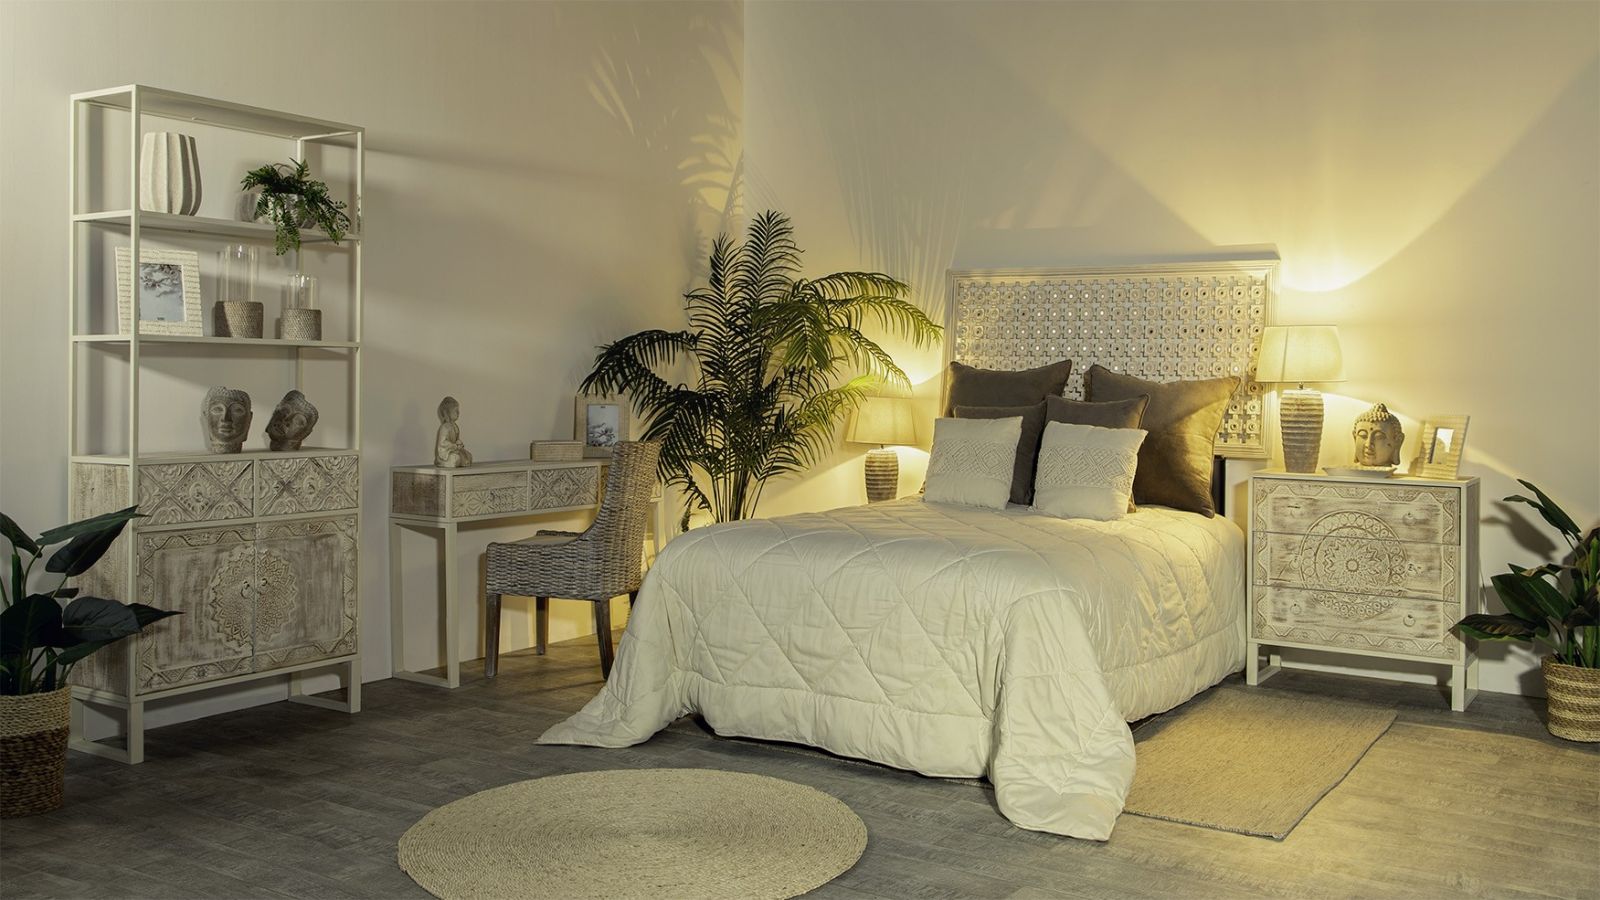 Descubre tu estilo con las últimas tendencias en decoración de dormitorios.